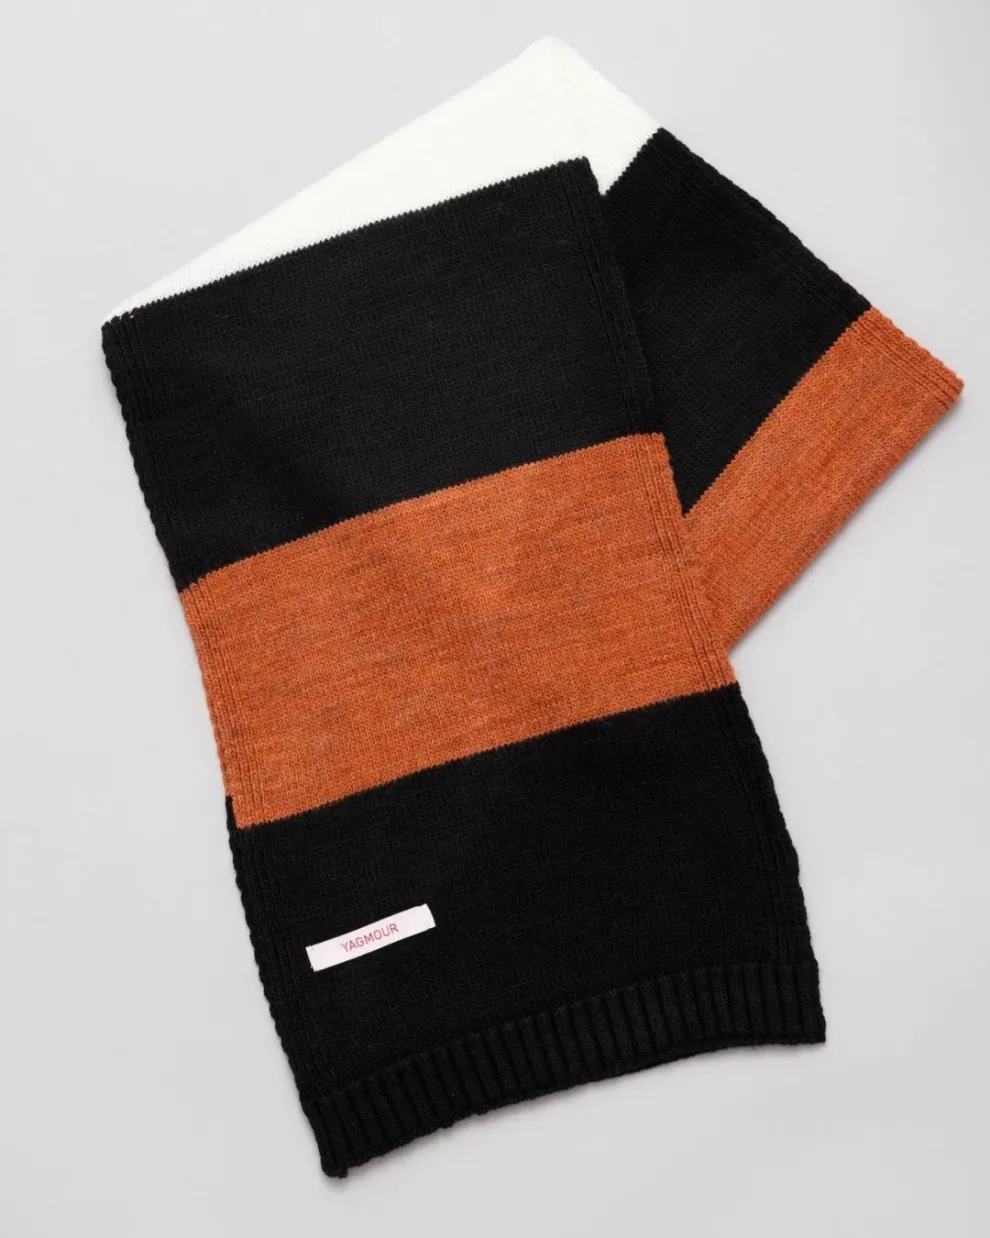 Combinando colores que son tendencia esta temporada, YAGMOUR tiene esta bufanda clásica que es ideal porque es liviana y práctica.